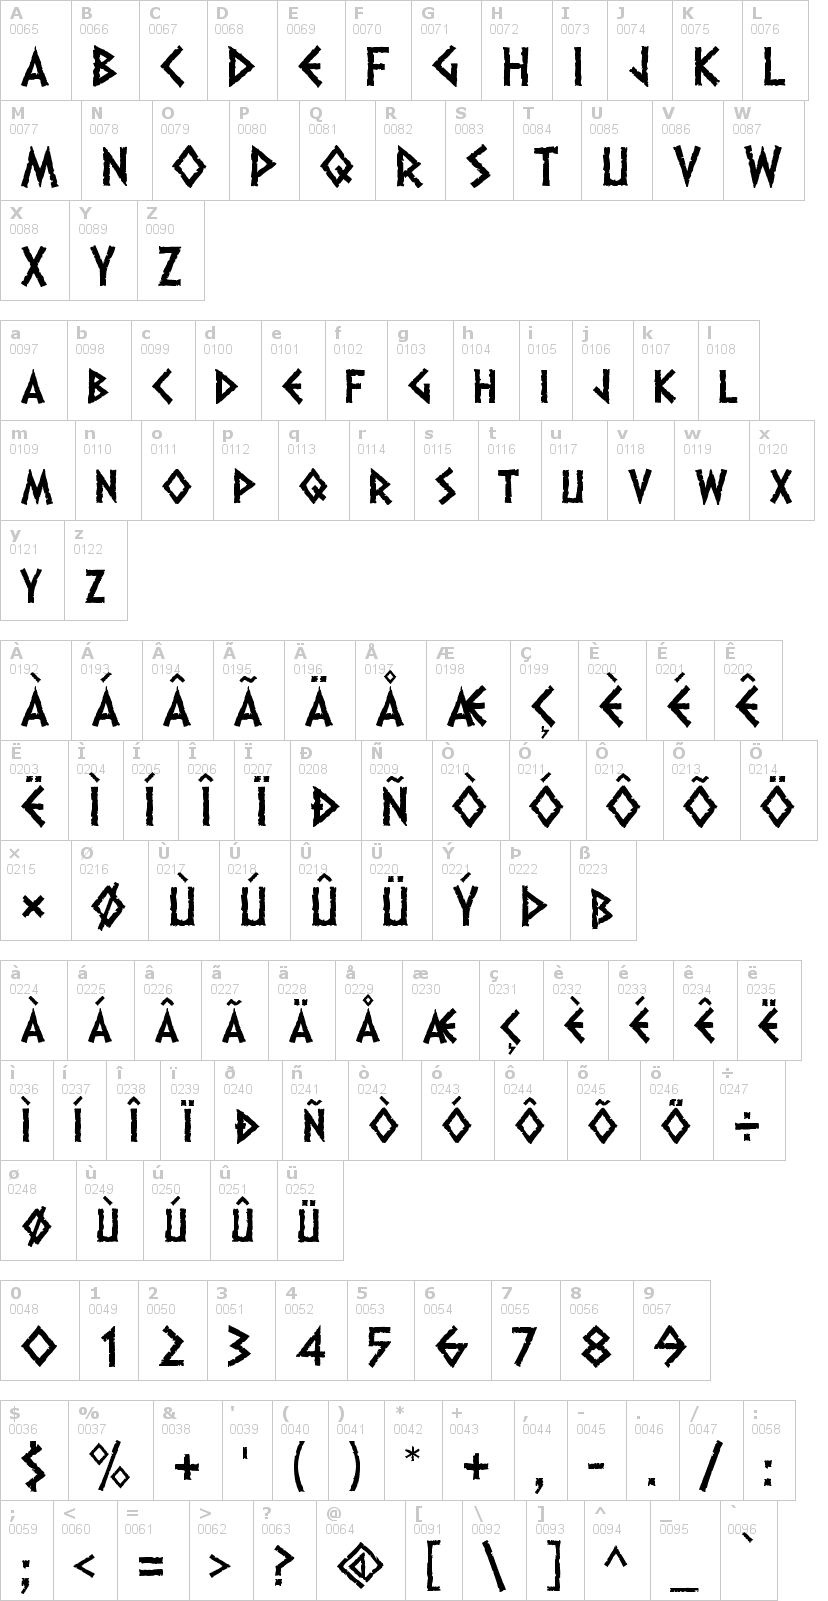 Lettere dell'alfabeto del font dalek con le quali è possibile realizzare adesivi prespaziati